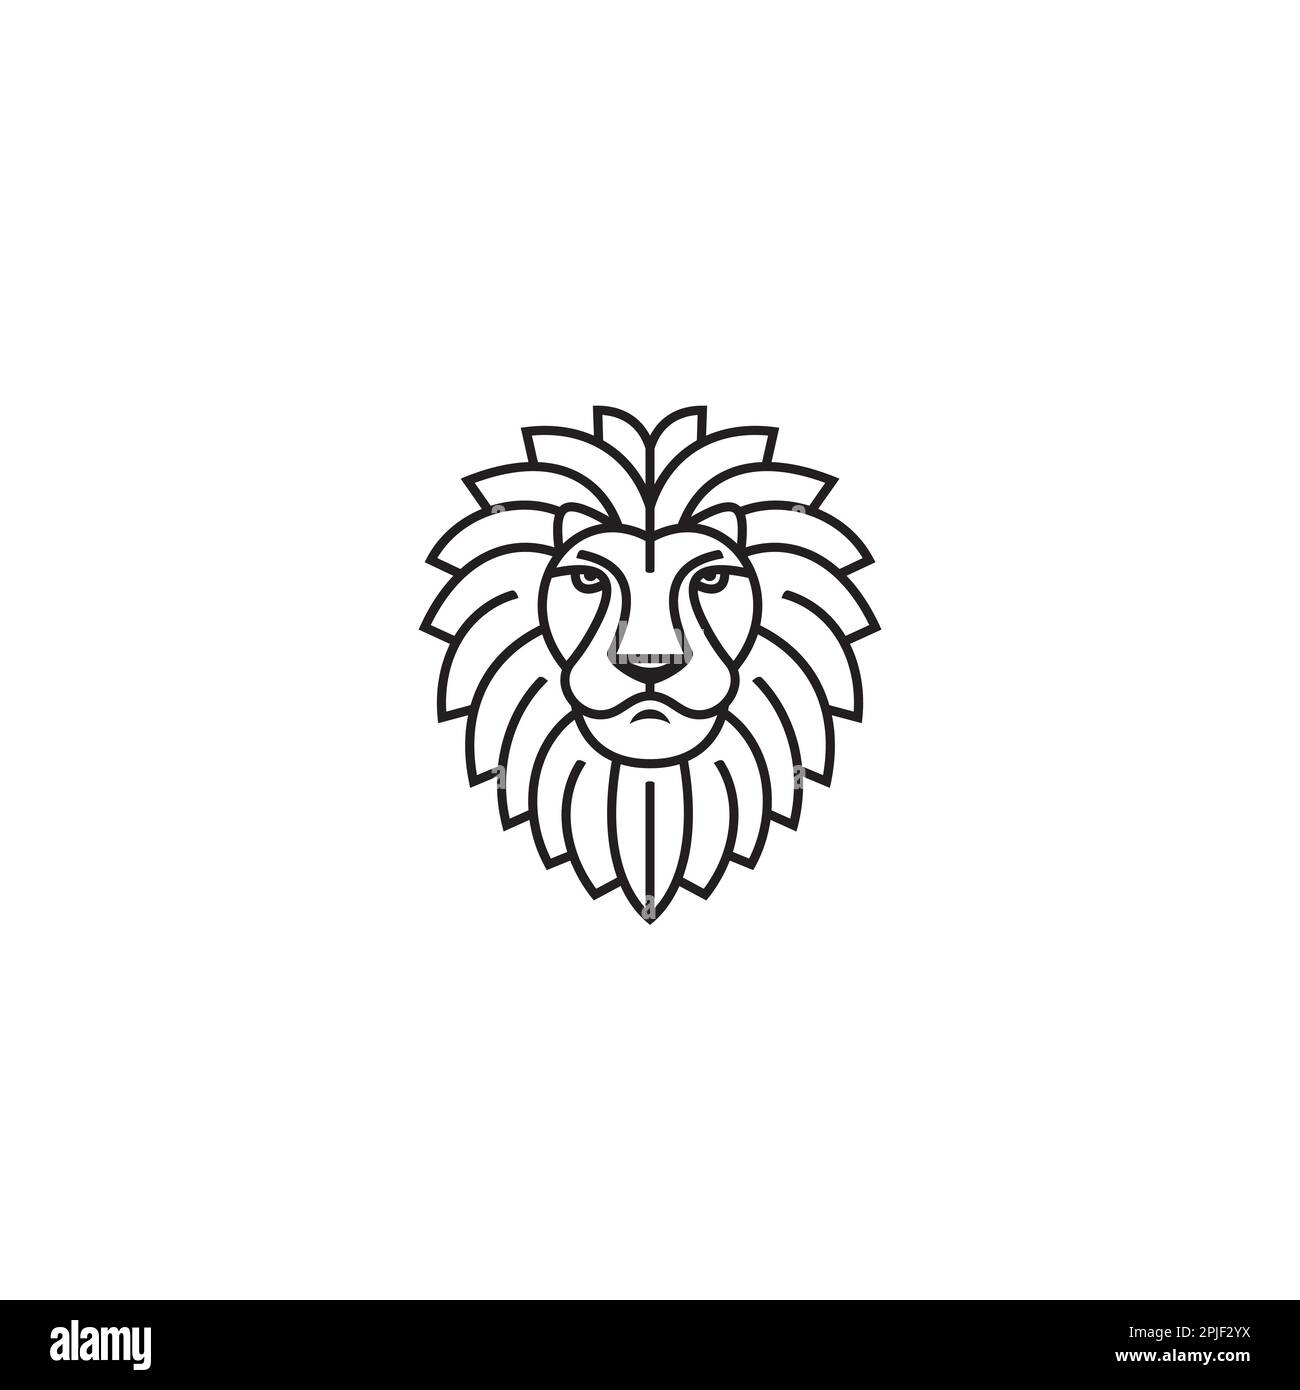 Lion logo or icon design Stock Vector